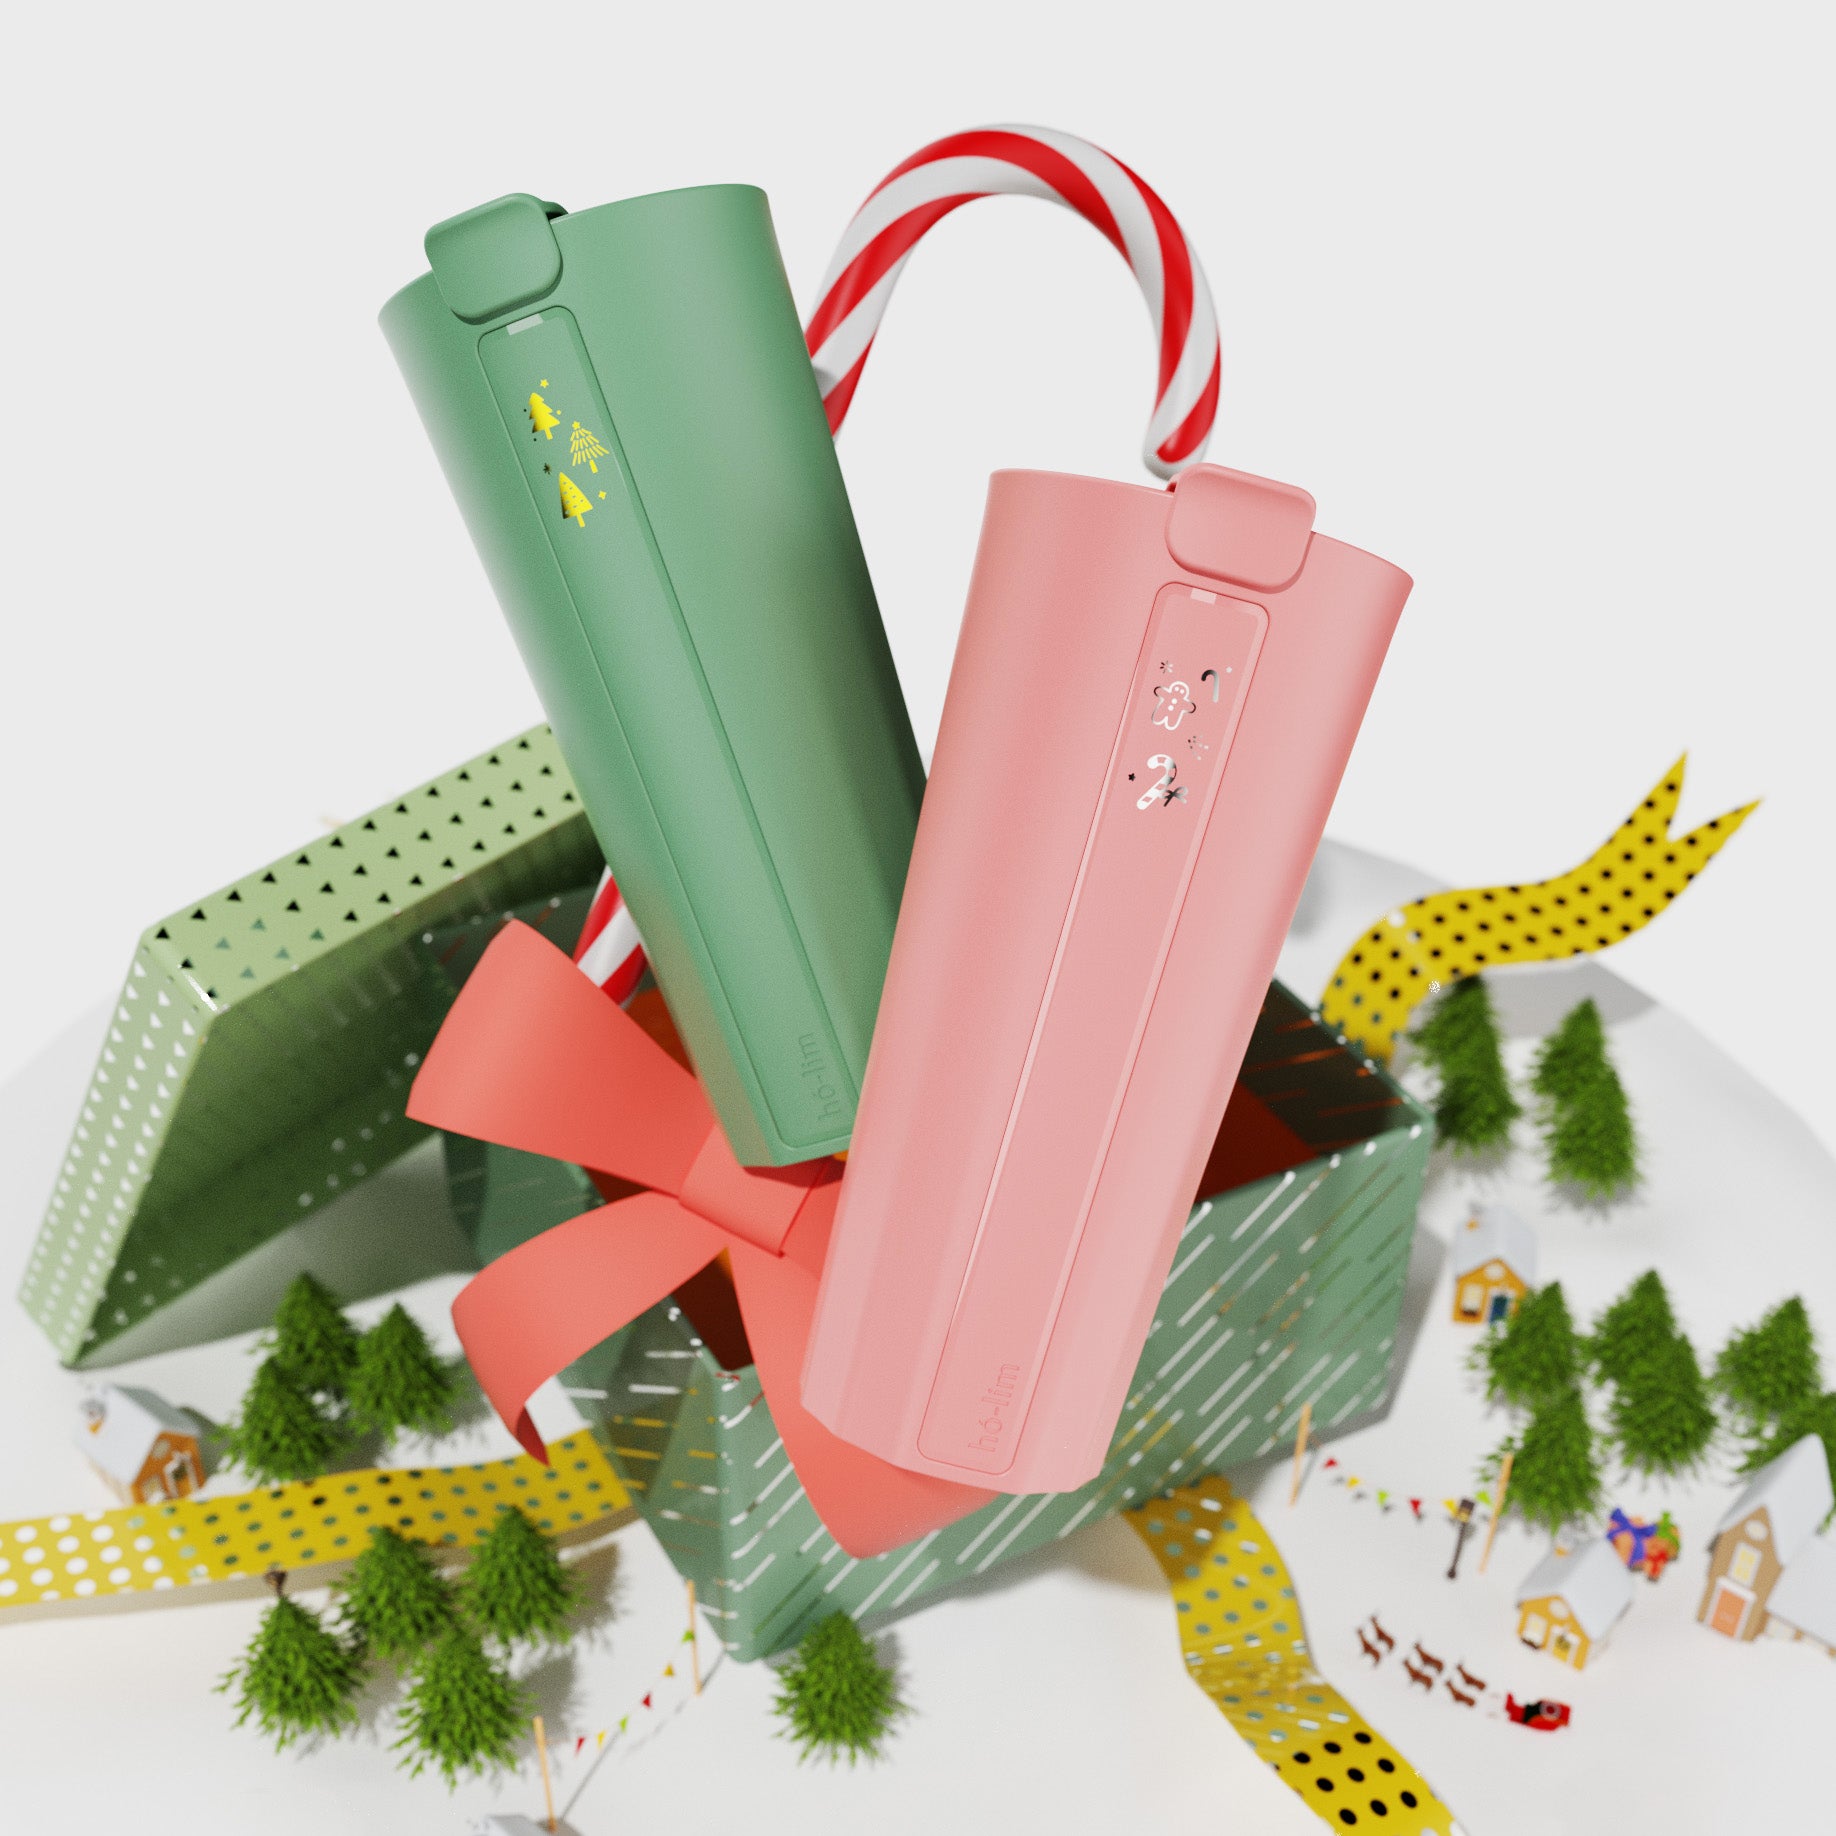 聖誕特別款 hó-lim 飲料杯 ✦ 2入優惠組